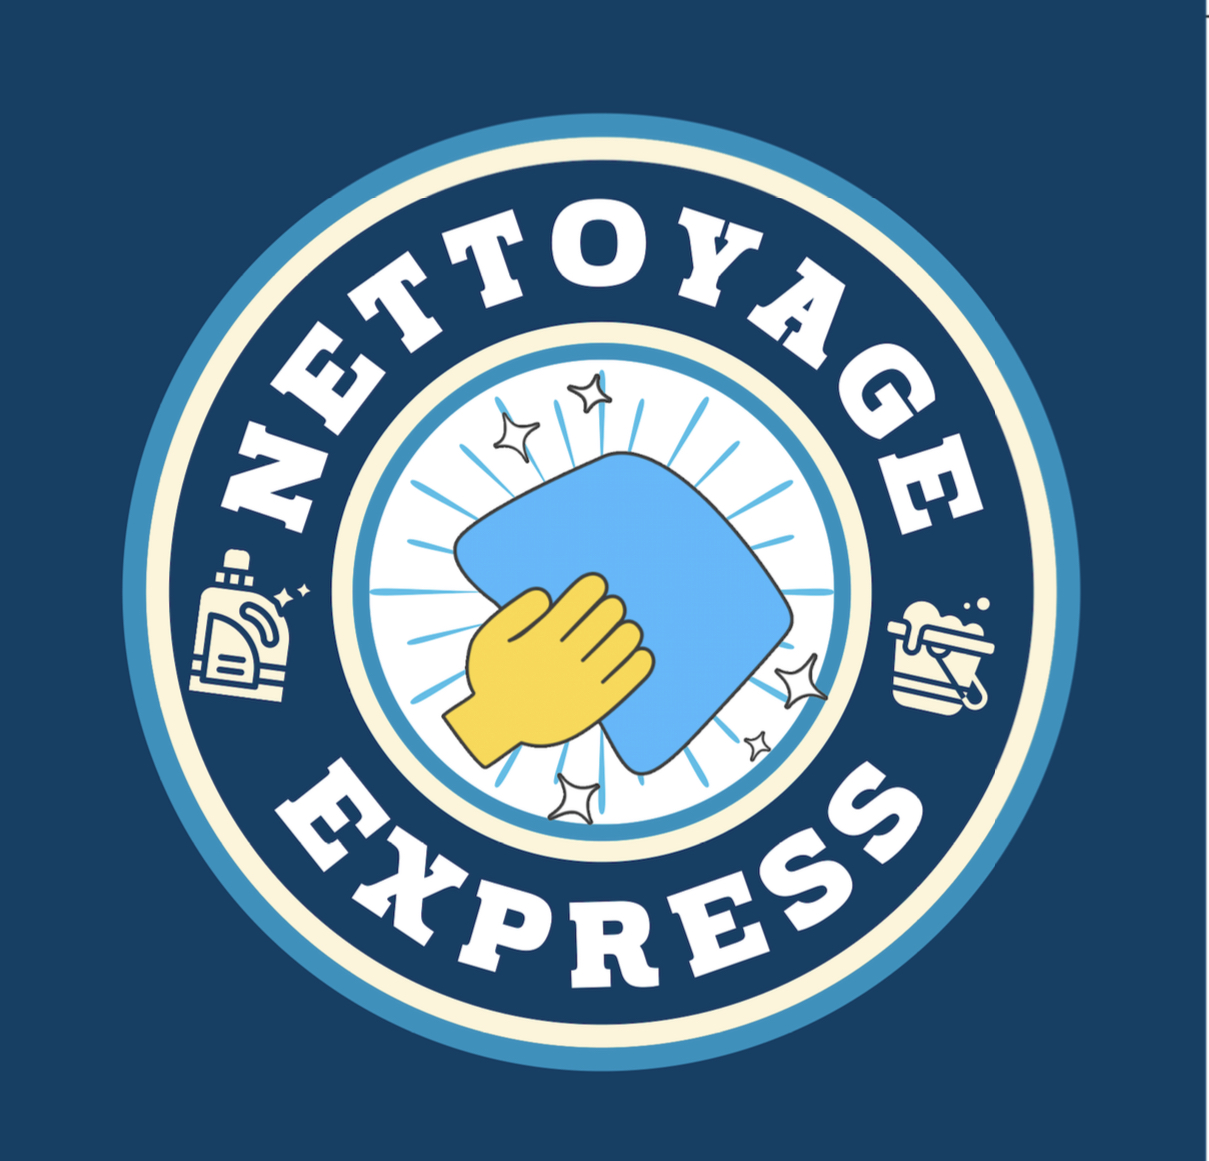 nettoyage express